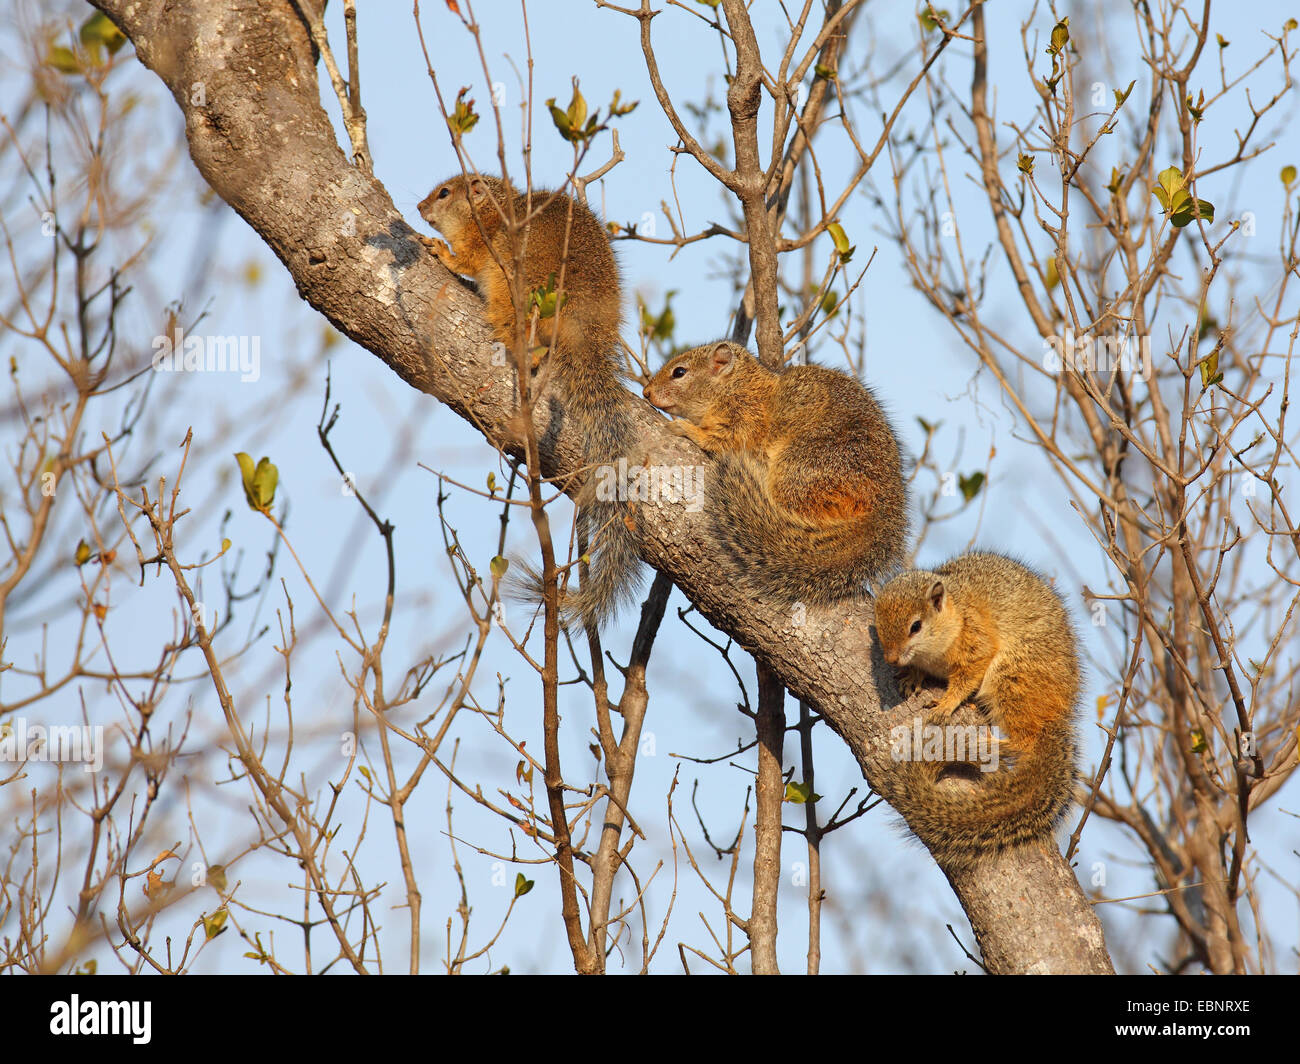 Smith's bush scoiattolo (Paraxrus cepapi), tre scoiattoli in fase di riscaldamento su un gambo di albero al sole del mattino, Sud Africa, Parco Nazionale Kruger Foto Stock